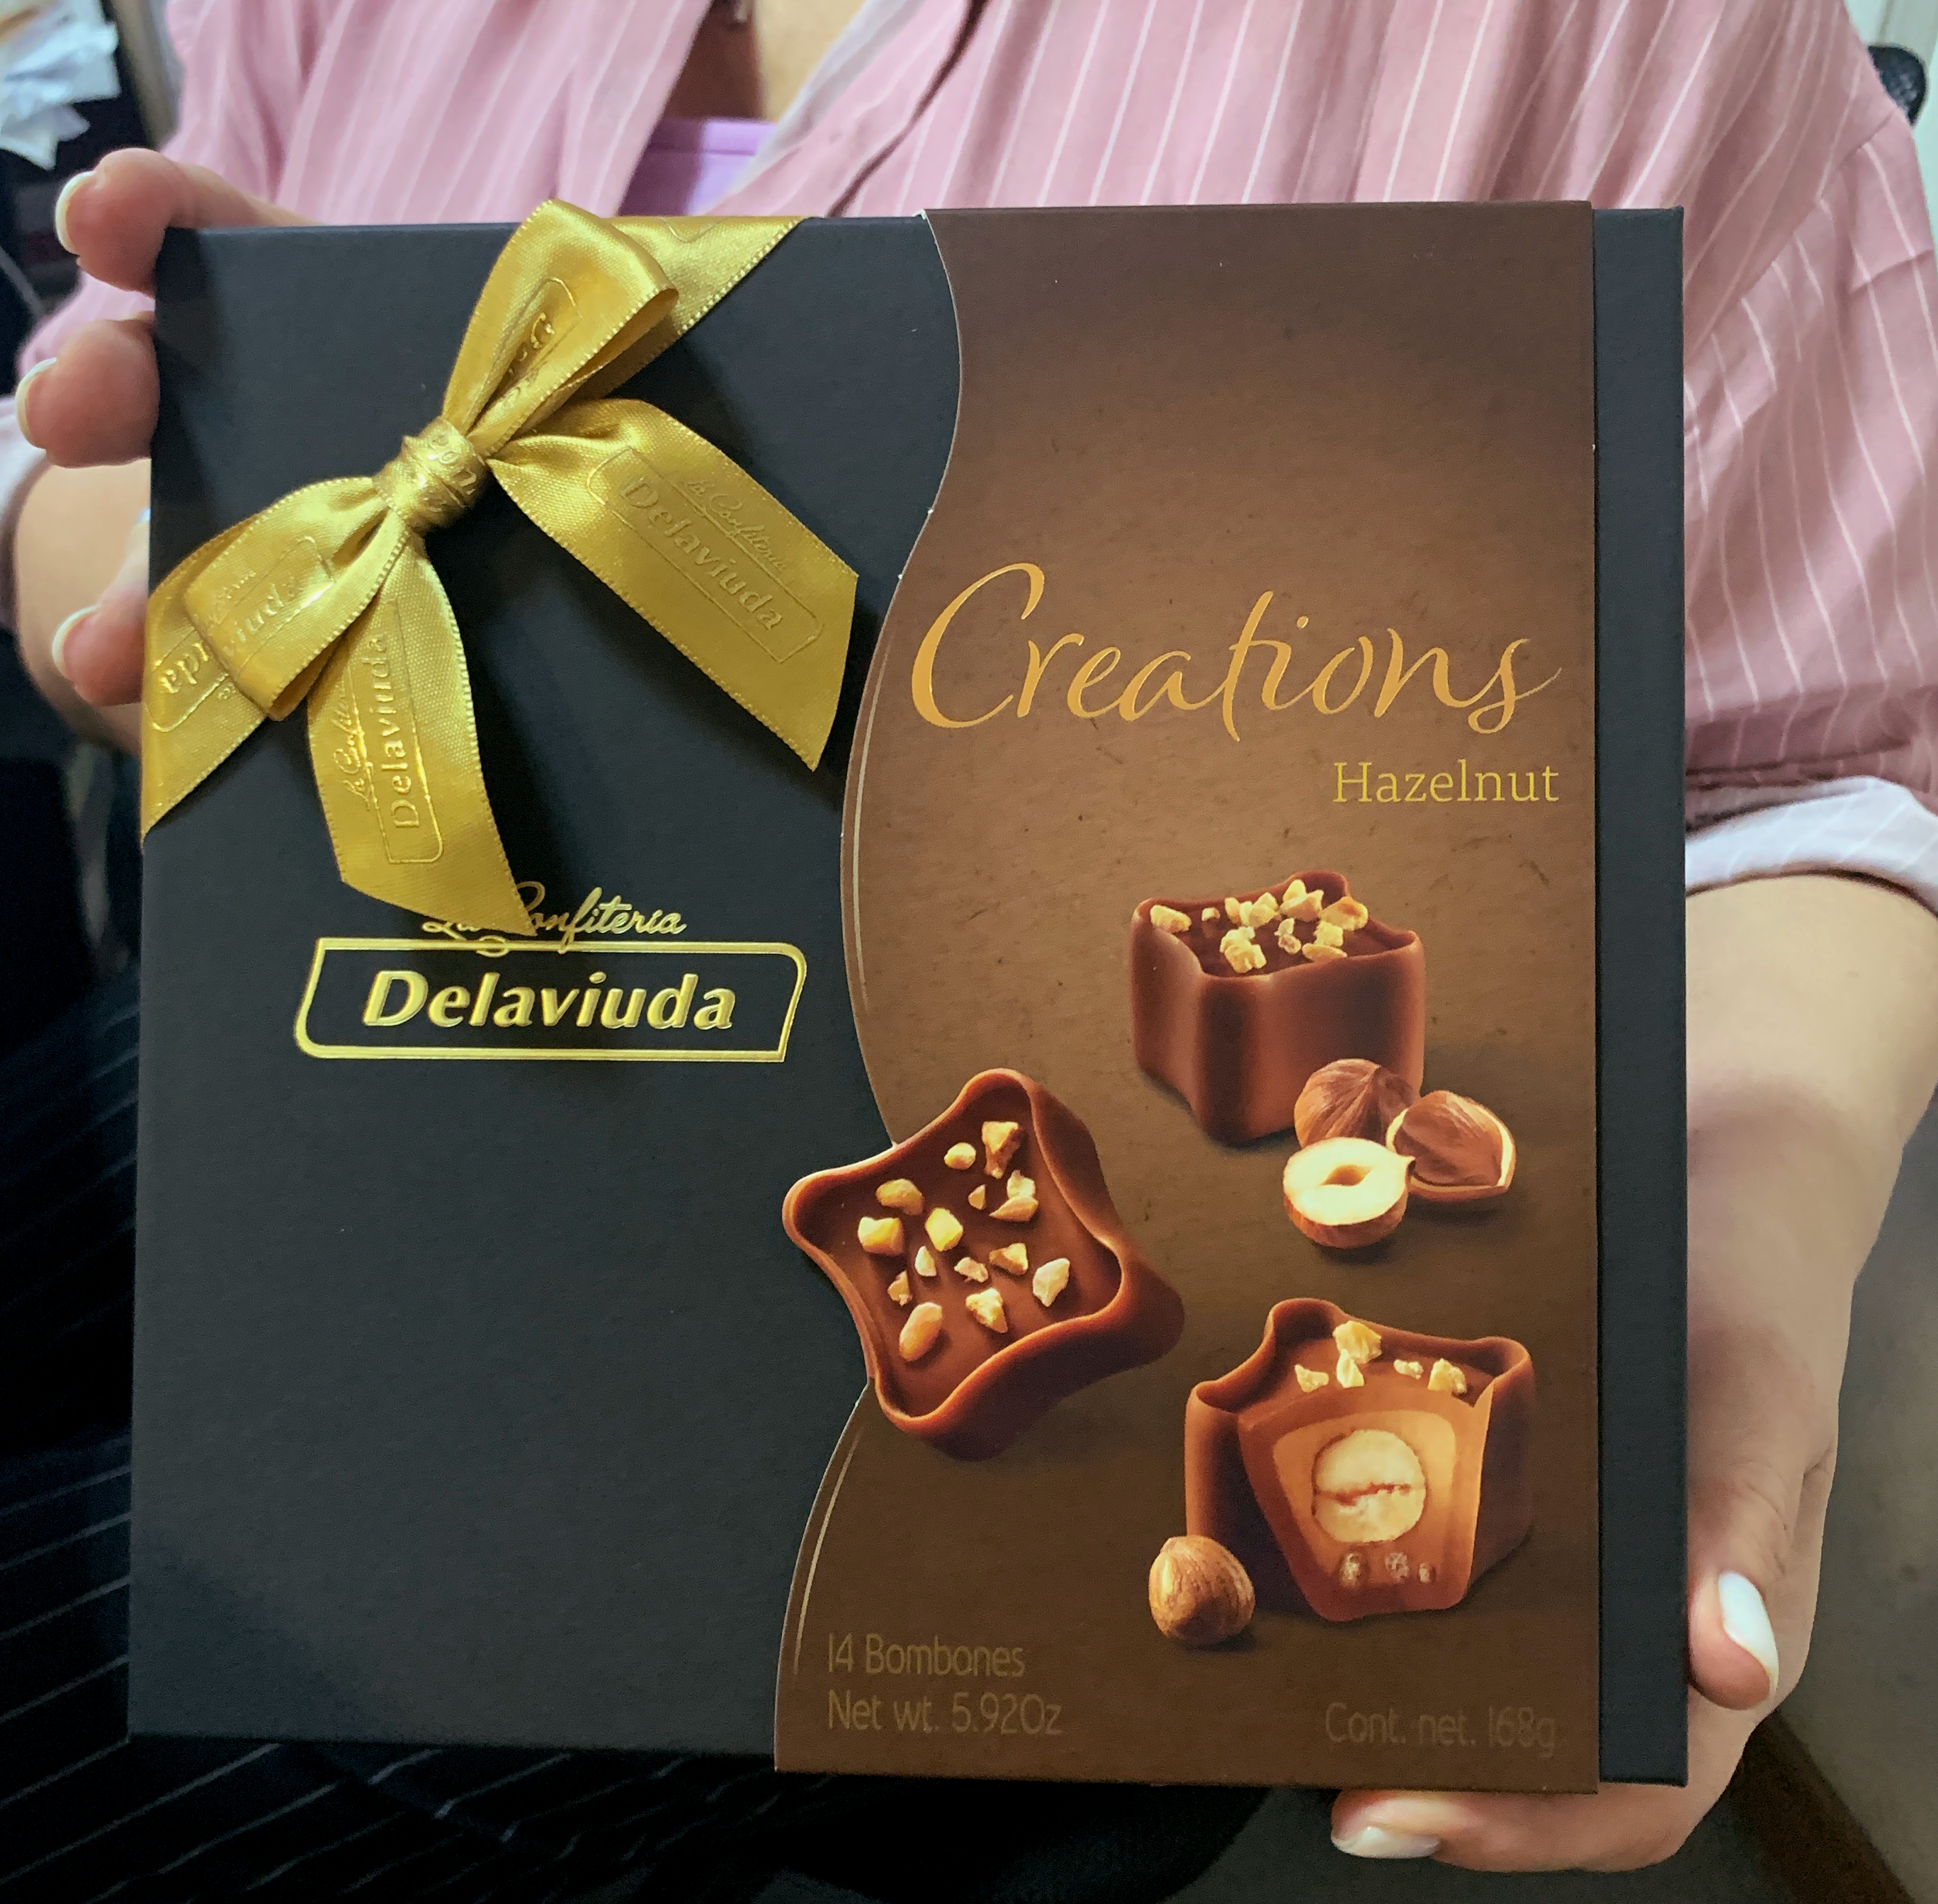 Шоколадные конфеты Delaviuda из молочного шоколада с фундуком Creations 168 г.